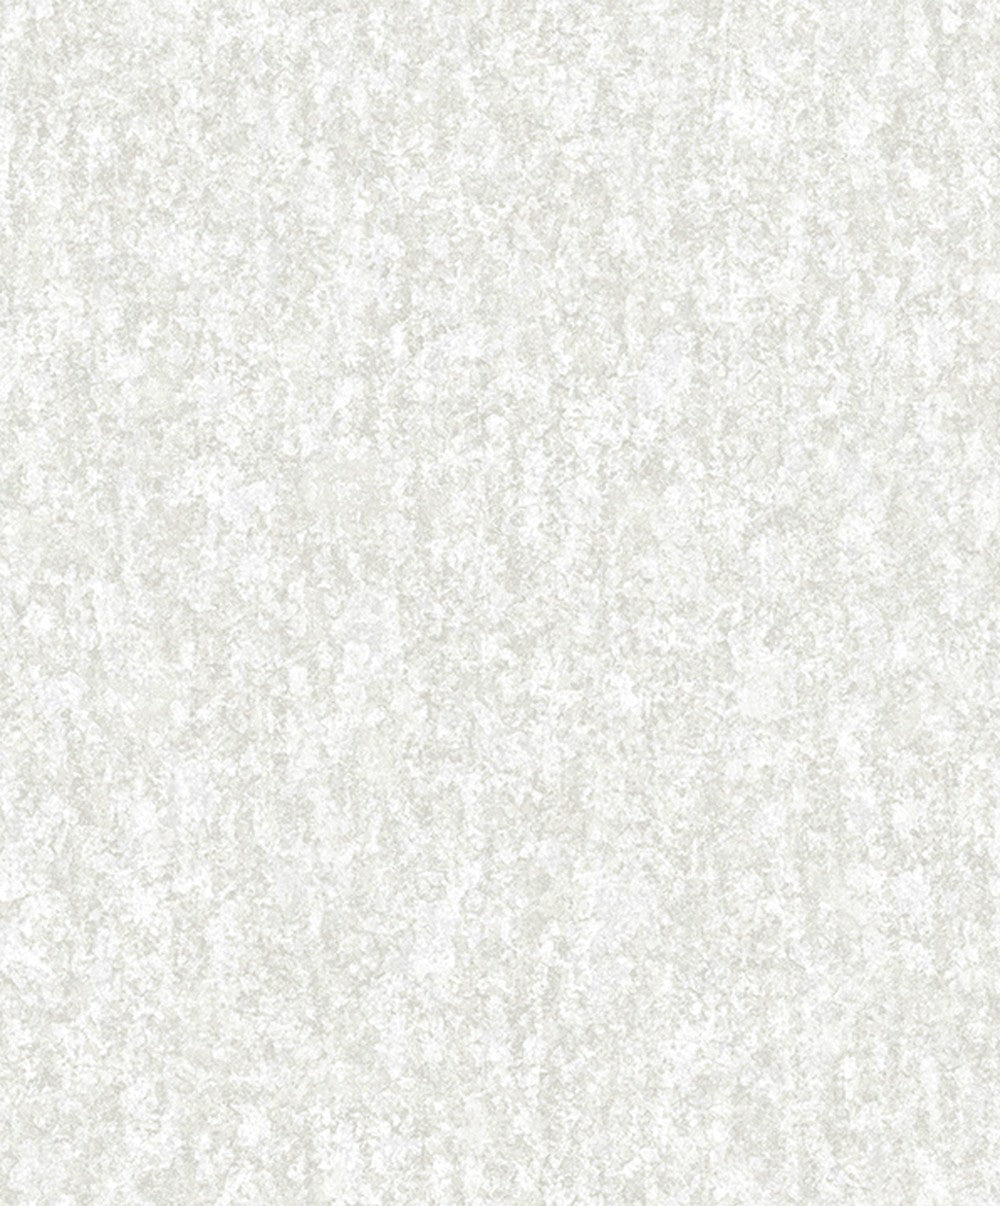 White Subtle Sophesticated Texture Wallpaper.